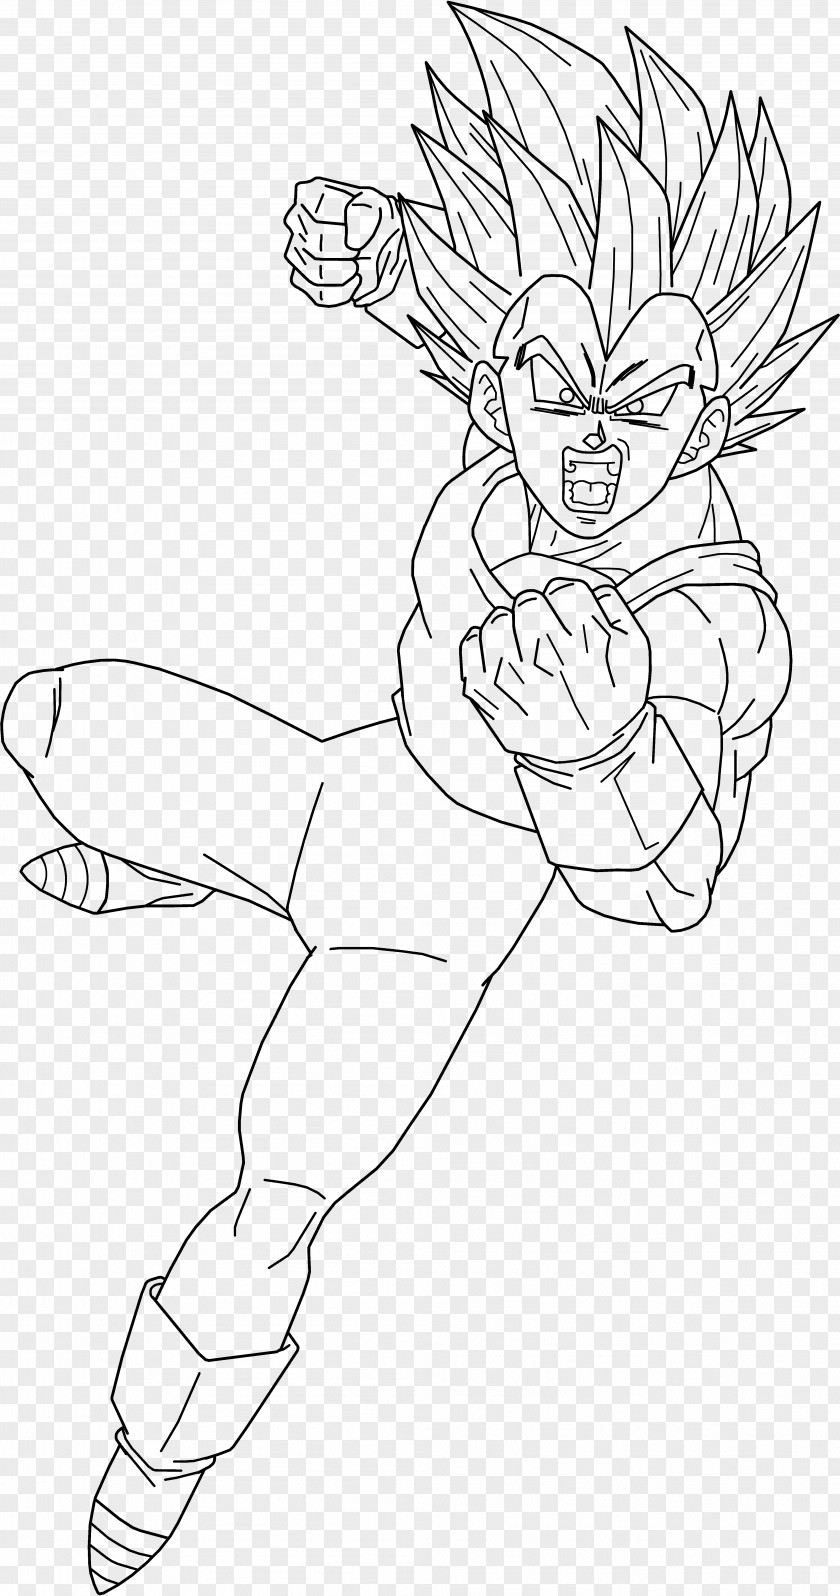 Dragon Ball Drawing With Color Vegeta Goku Trunks Gohan Sketch PNG